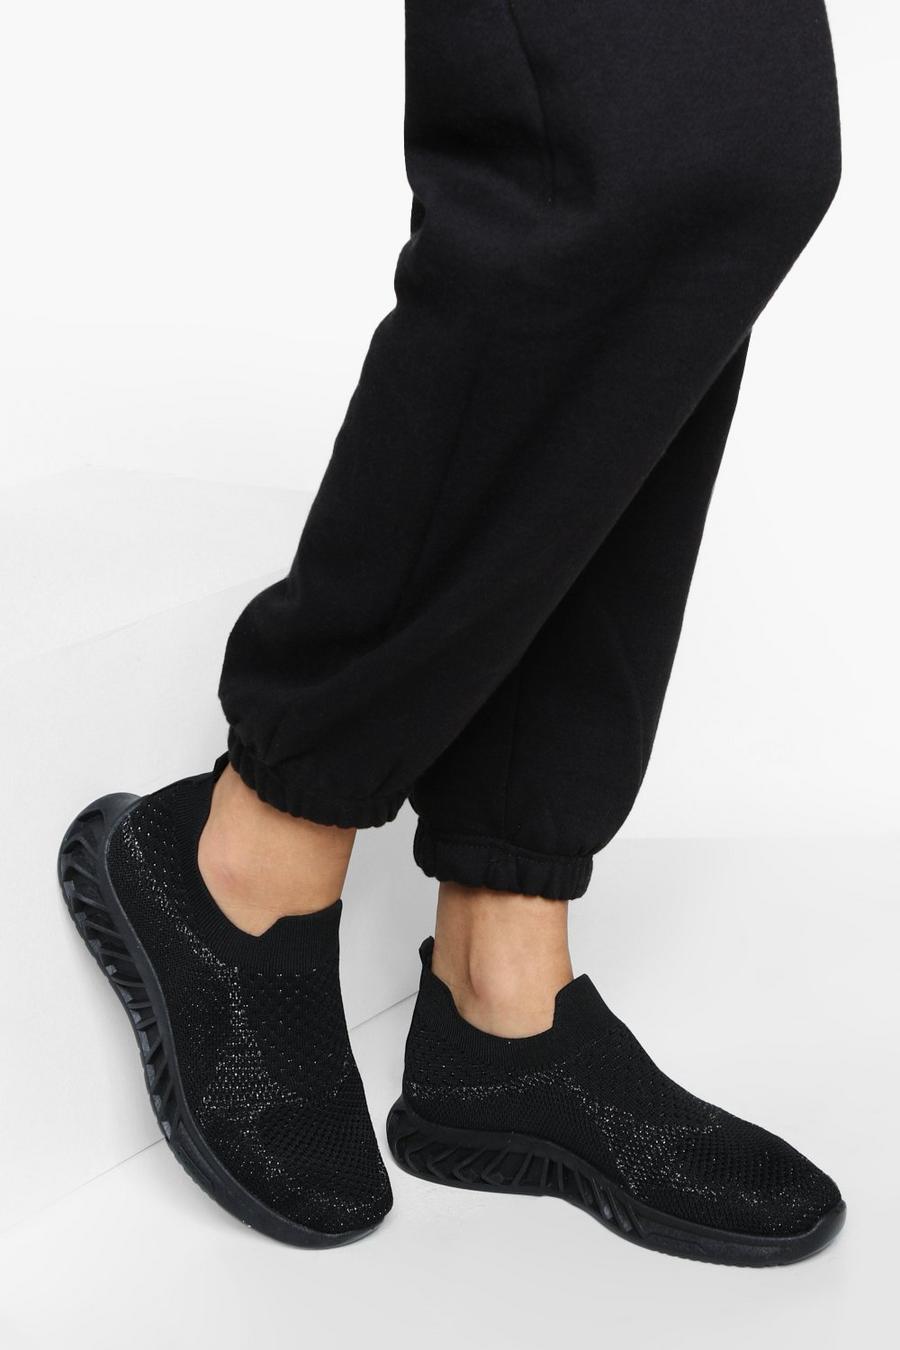 Baskets chaussettes noires, Black noir